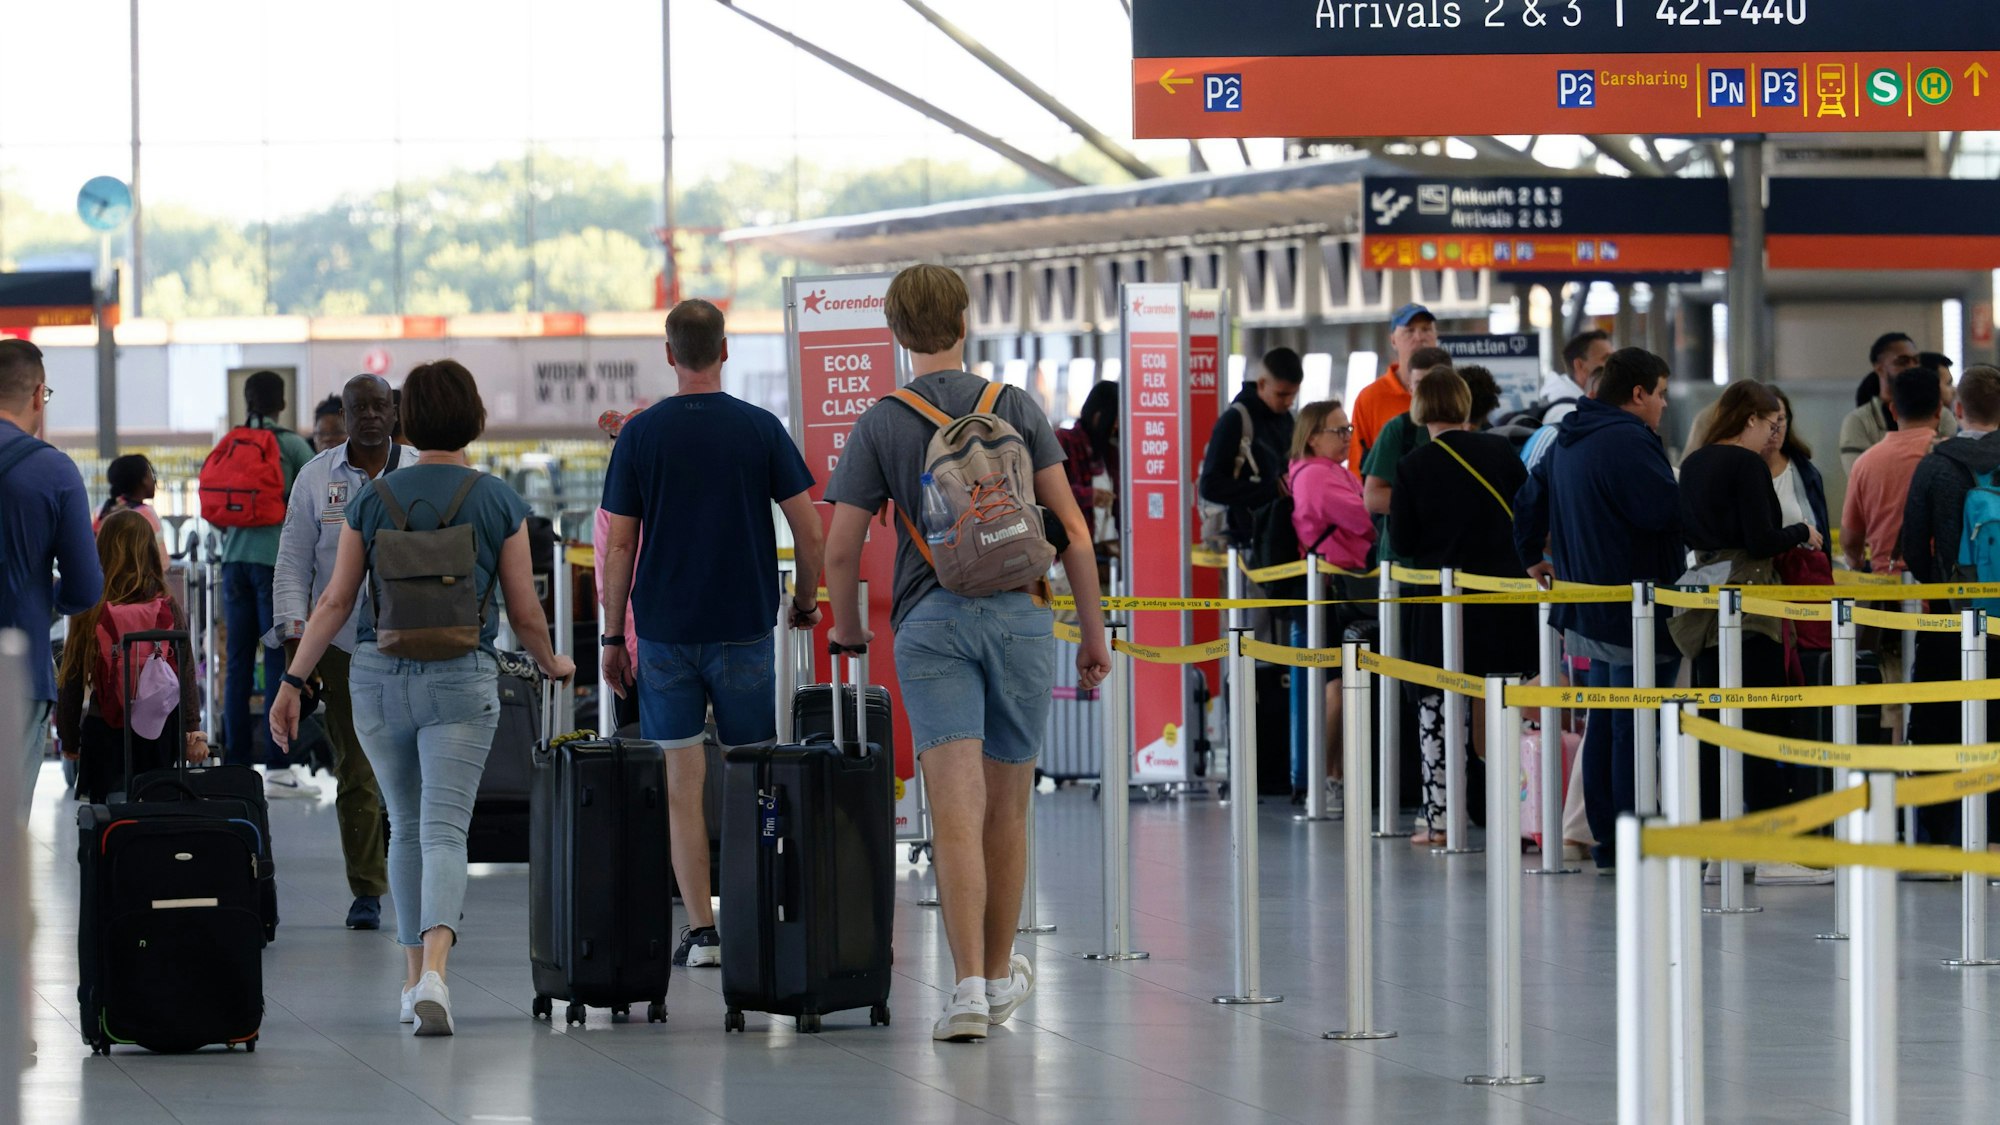 Reisende am Flughafen Köln/Bonn gehen mit ihrem Gepäck durch die Abflughalle.